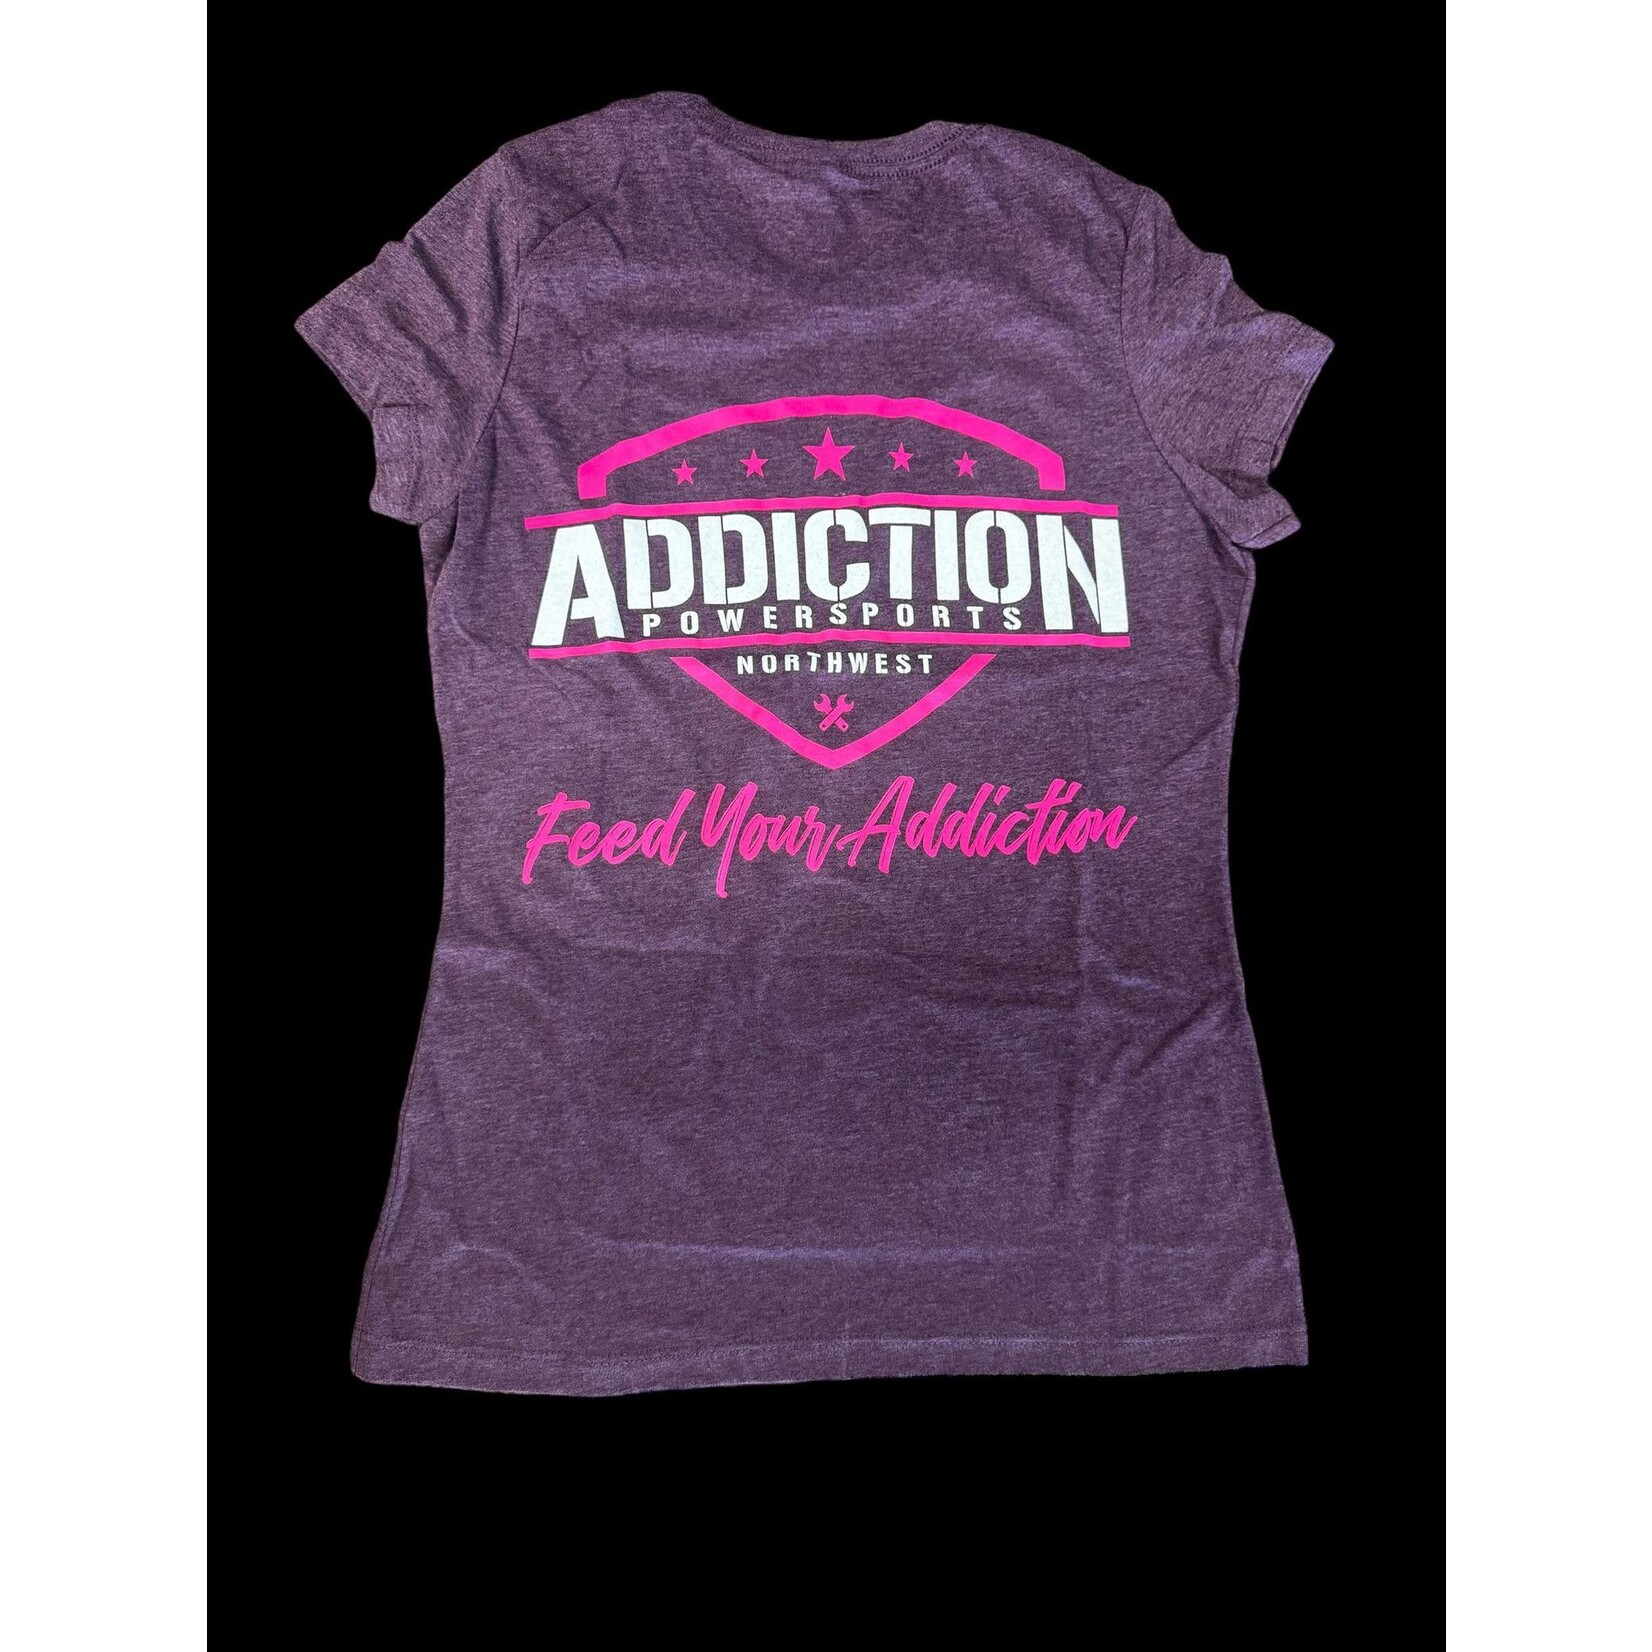 Addiction Powersports NW T-Shirt